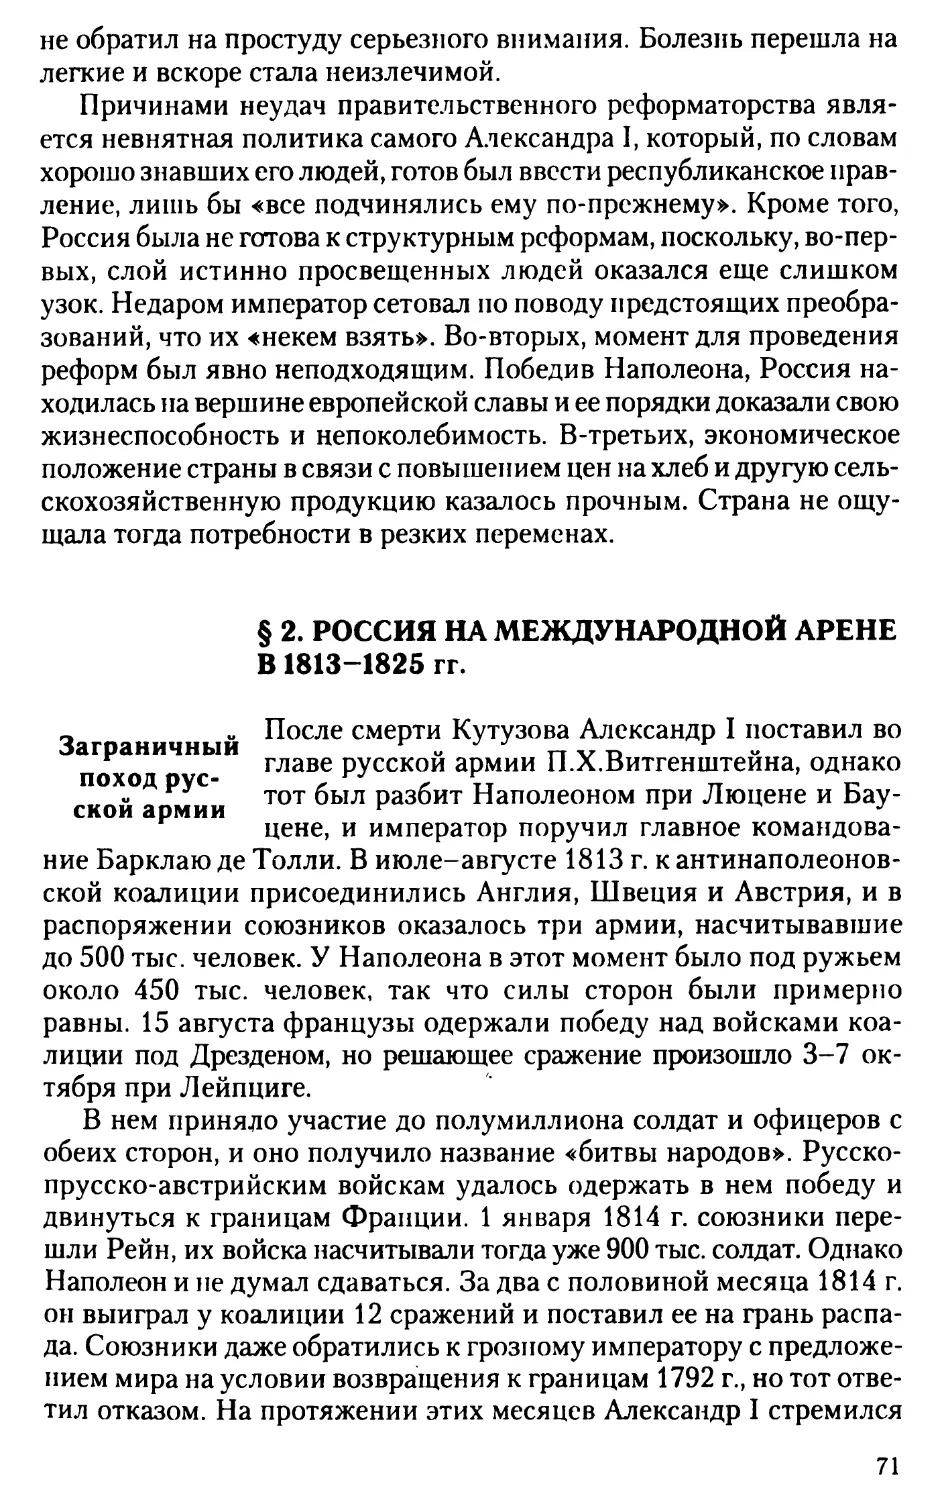 § 2. Россия на международной арене в 1813-1825 гг